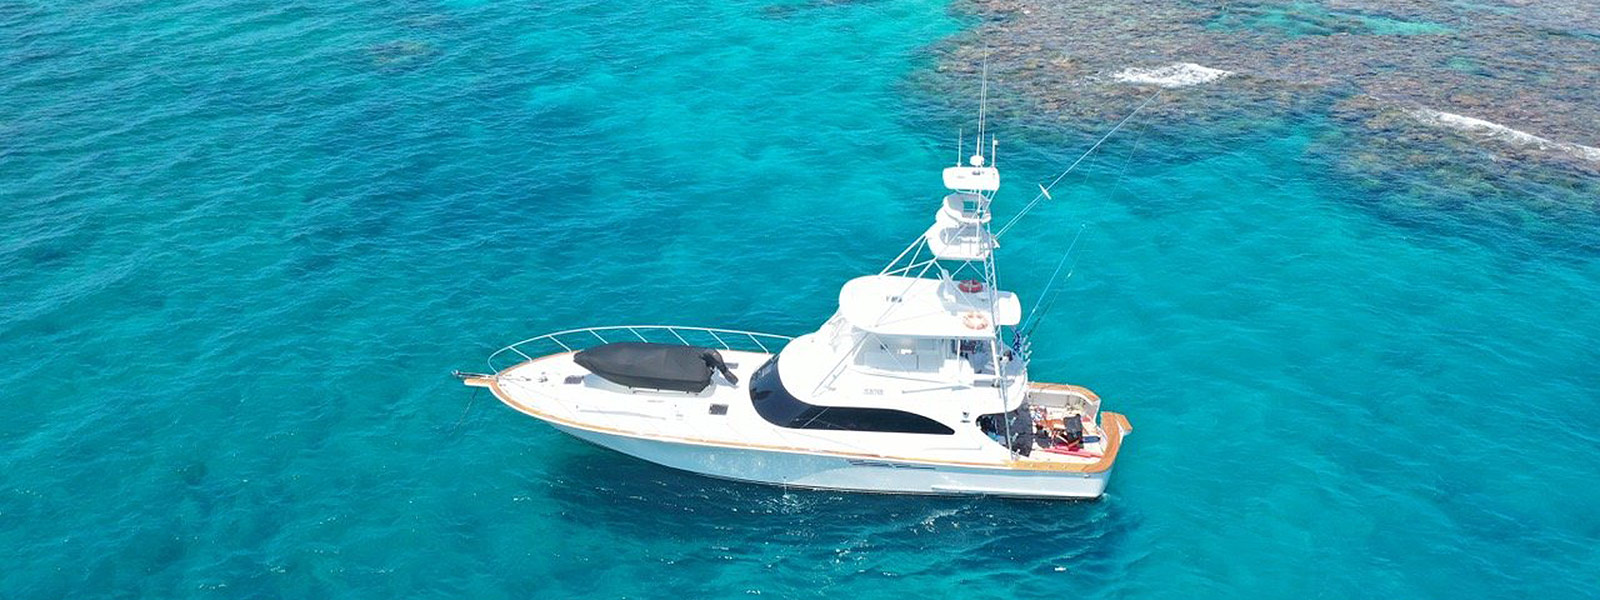 Luxury Private Boat Charter Port Douglas